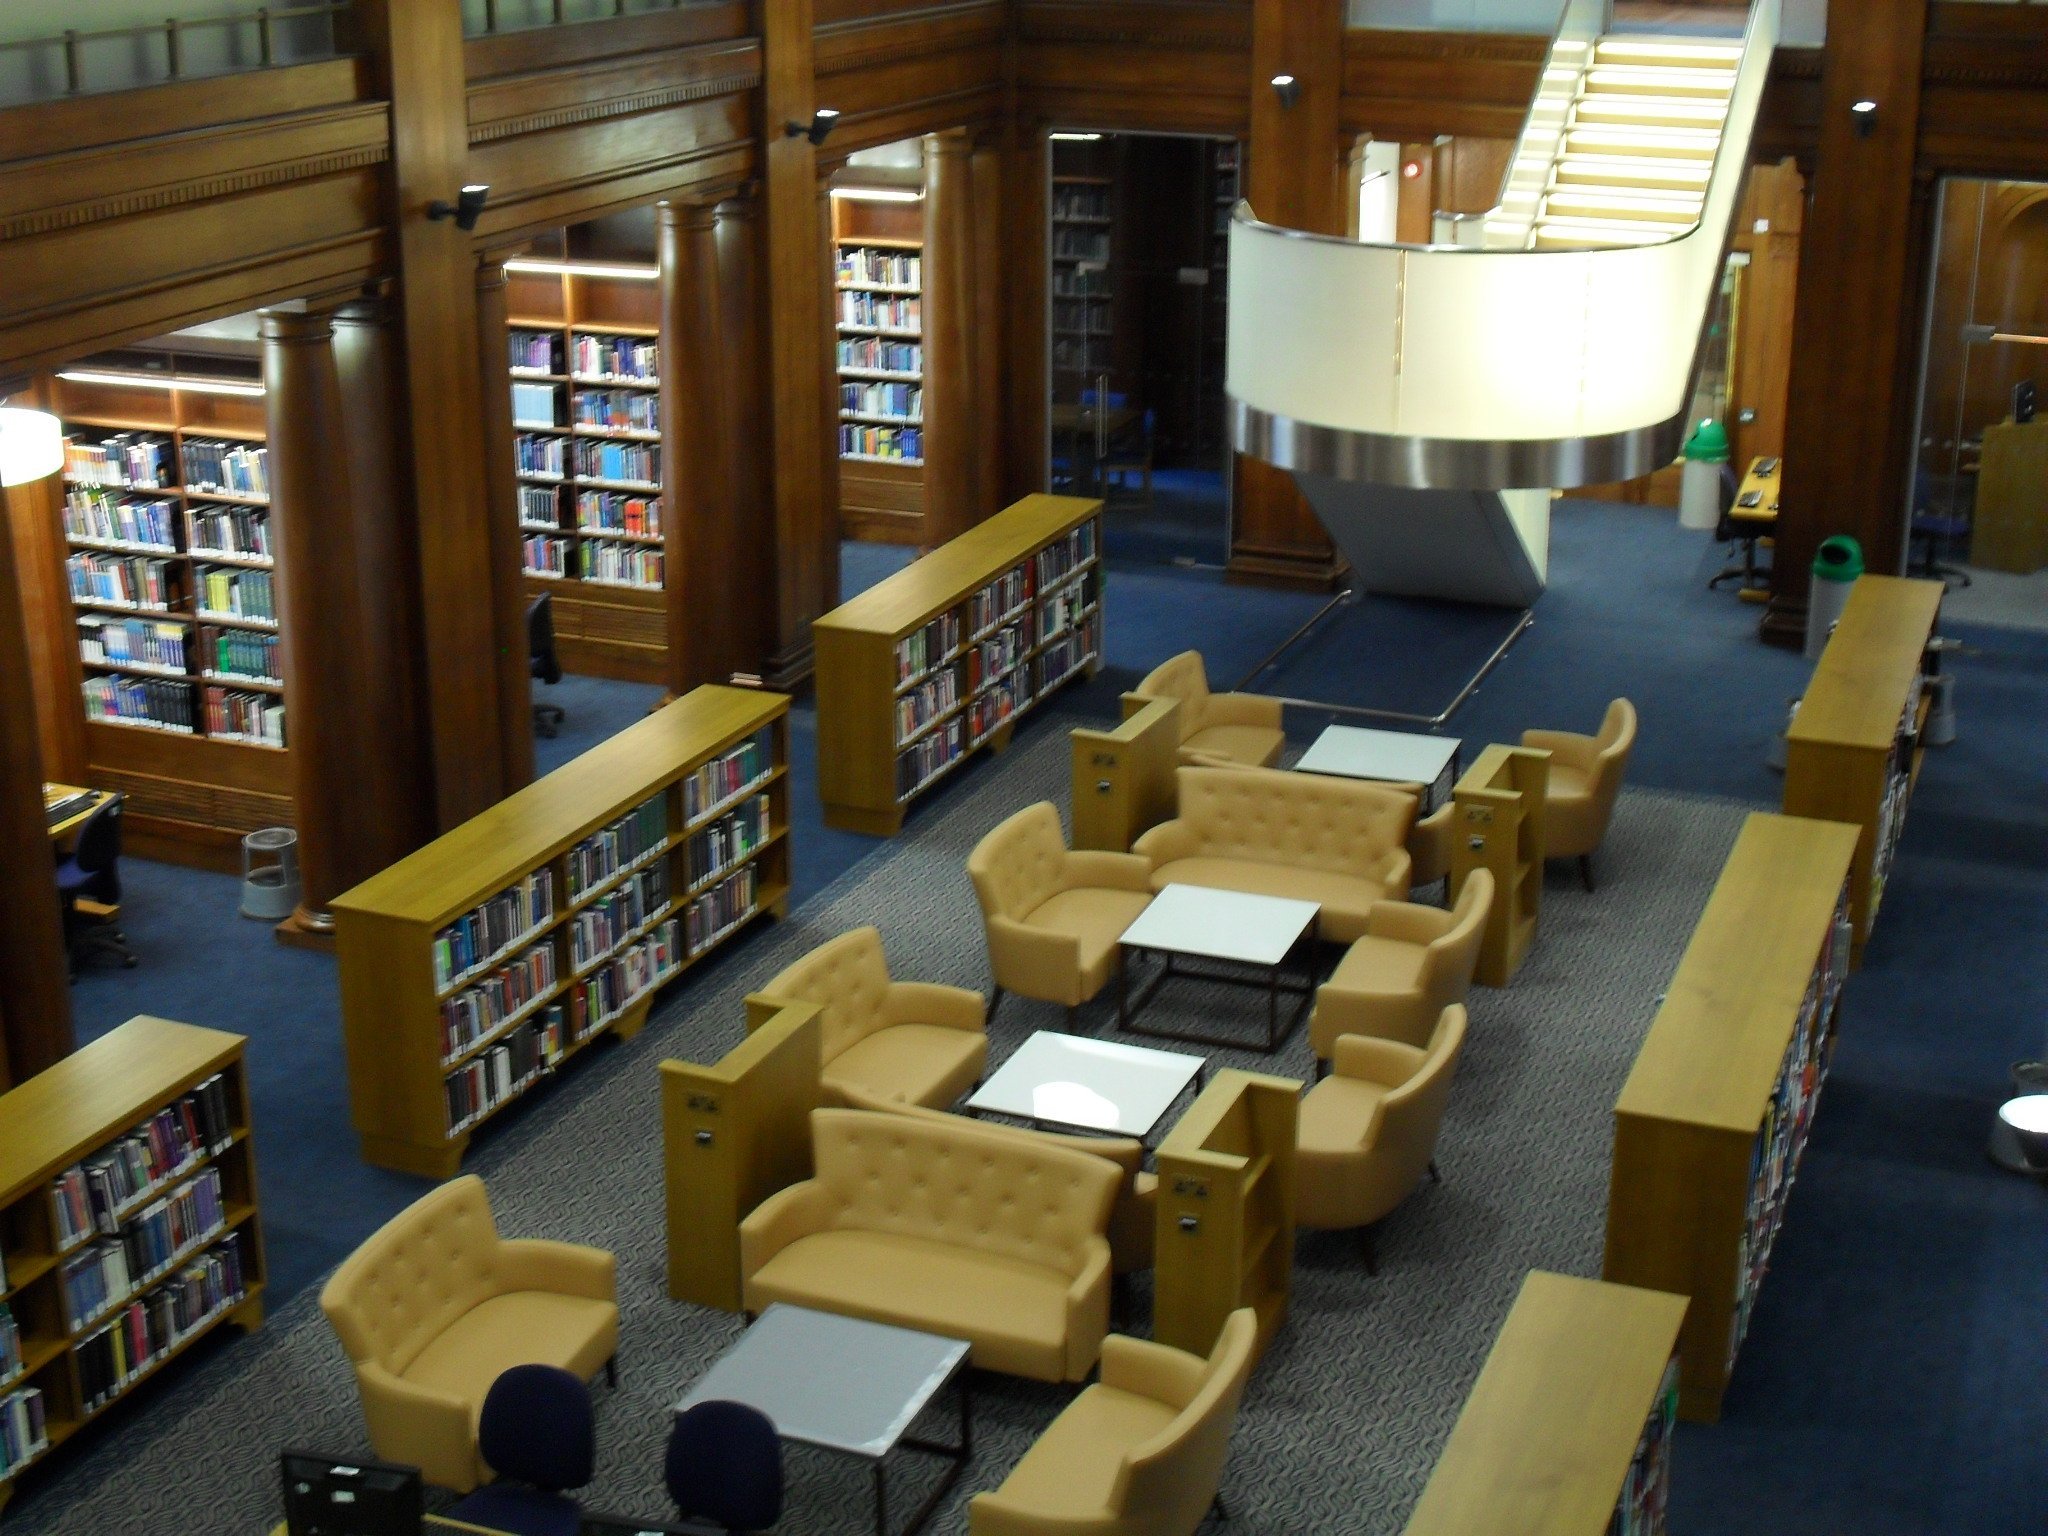 Библиотека лучших практик. Имперский колледж Лондона библиотека. Лондонский Имперский колледж библиотека. Читальный зал библиотеки Капитолия Вашингтон. Библиотека Джорджа Пибоди, Балтимор, США.